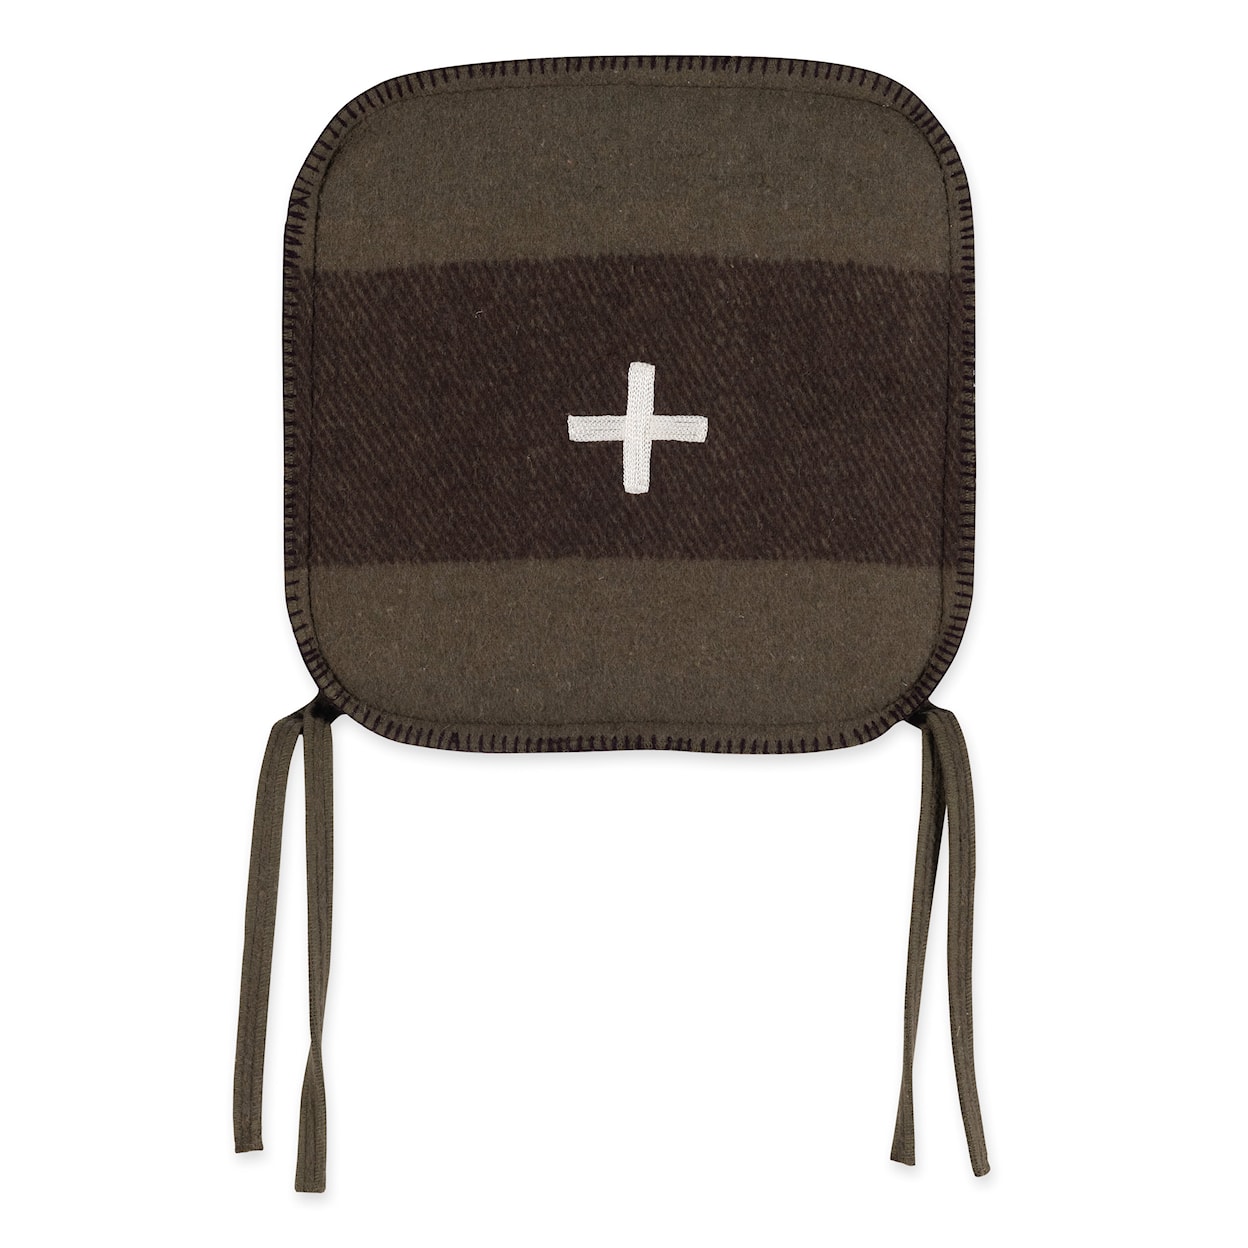 BOBO Intriguing Objects BOBO Intriguing Objects Swiss Army Chair Cushion 15x15 Green/Brown